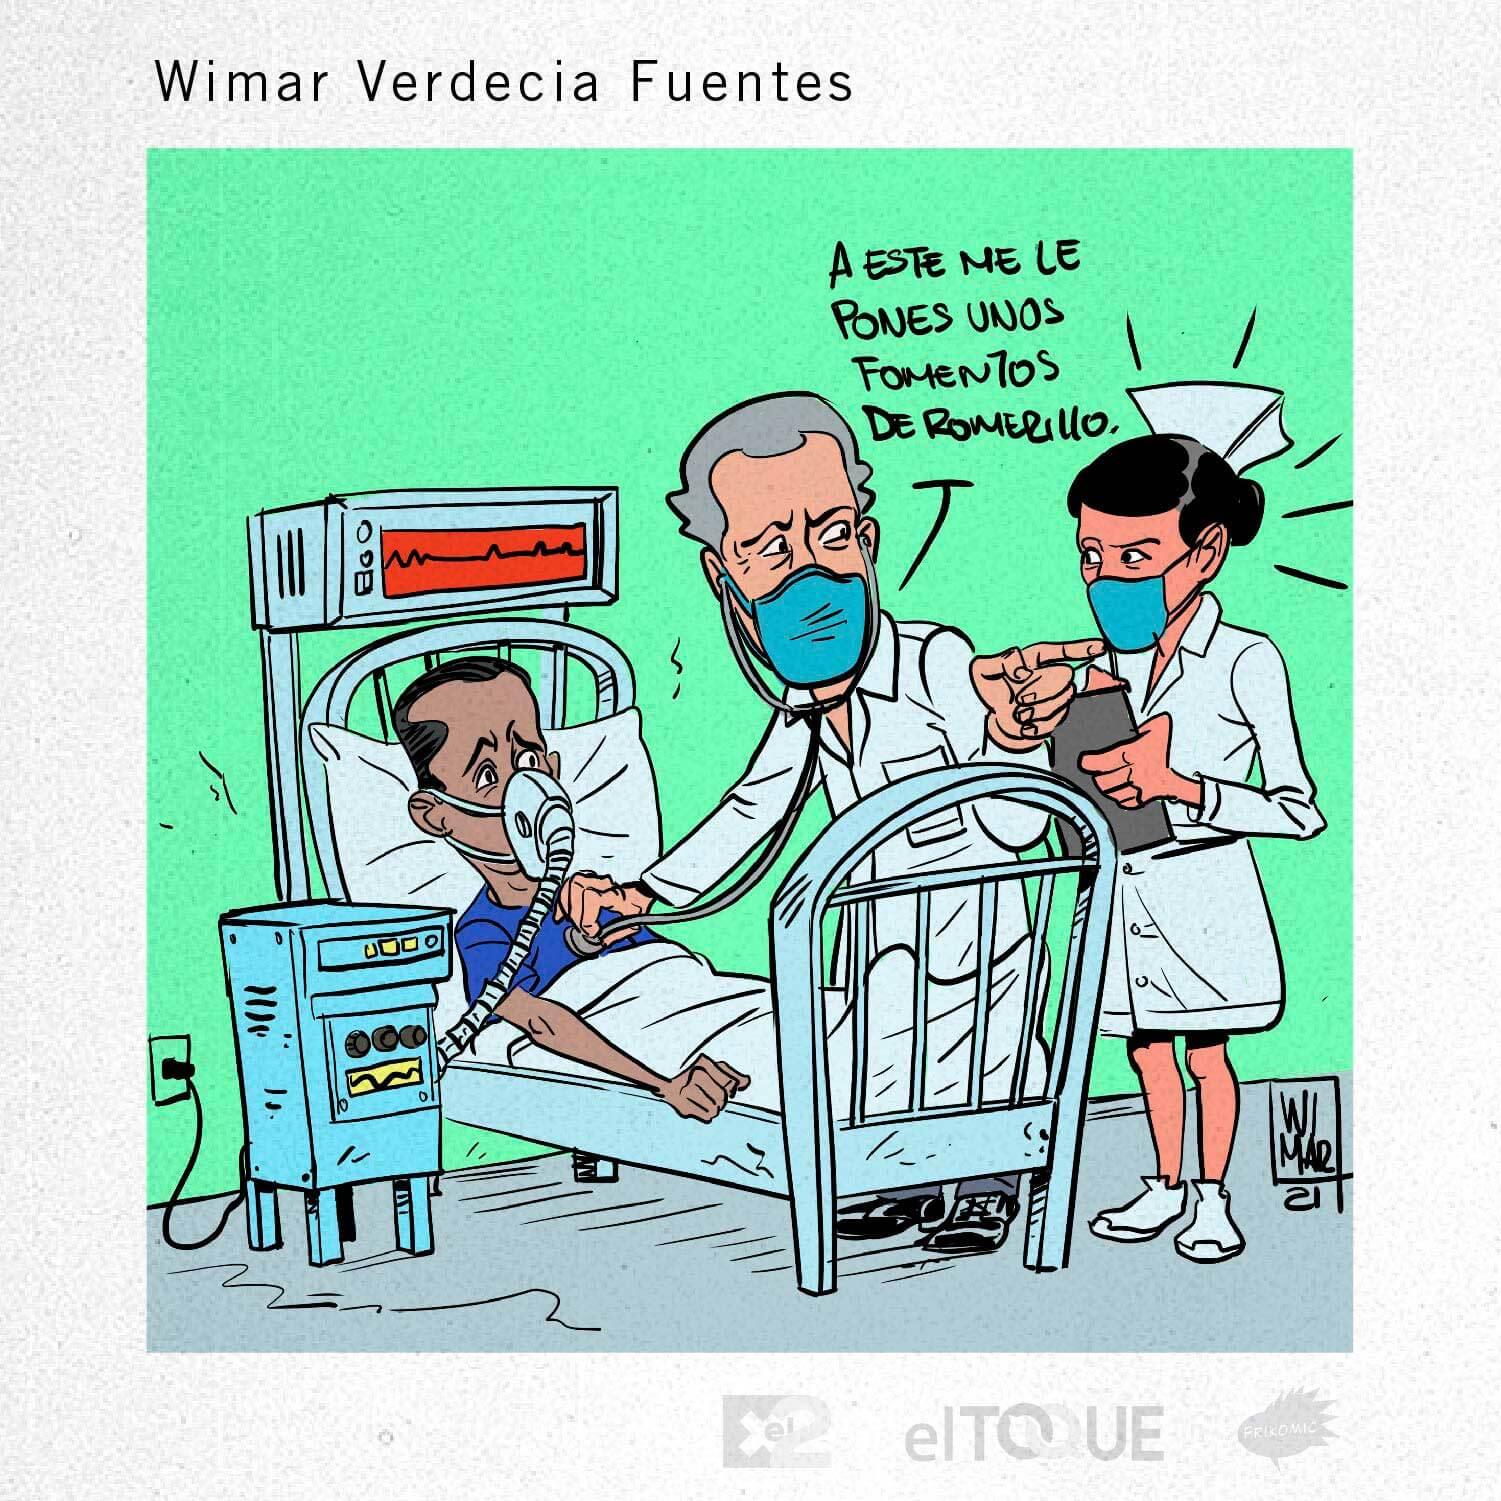 21-04-Verdecia-Wimar-ESCASEZ-DE-MEDICAMENTOS-FOMENTOS-DE-ROMERILLO-CUBA.jpg